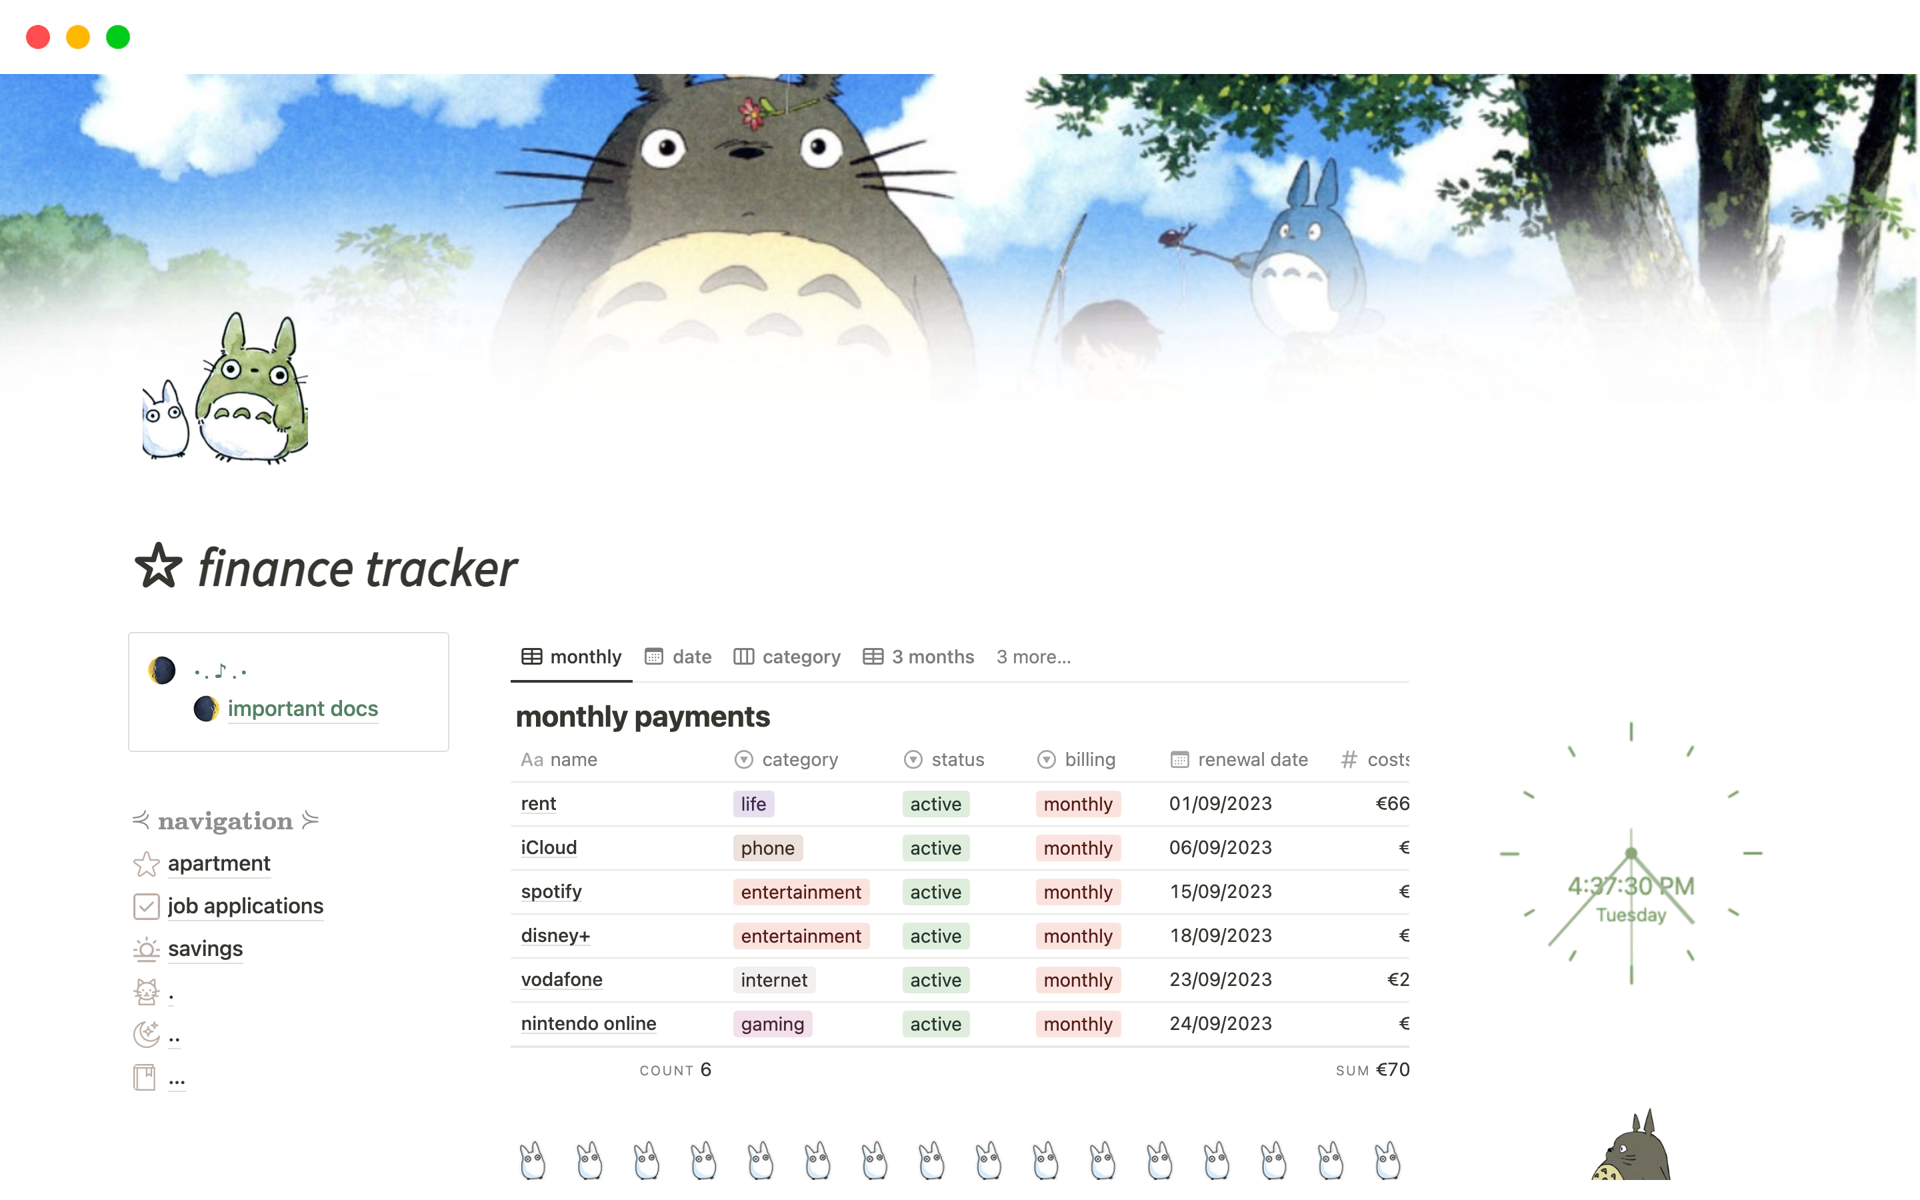 finance tracker: totoro version for light mode